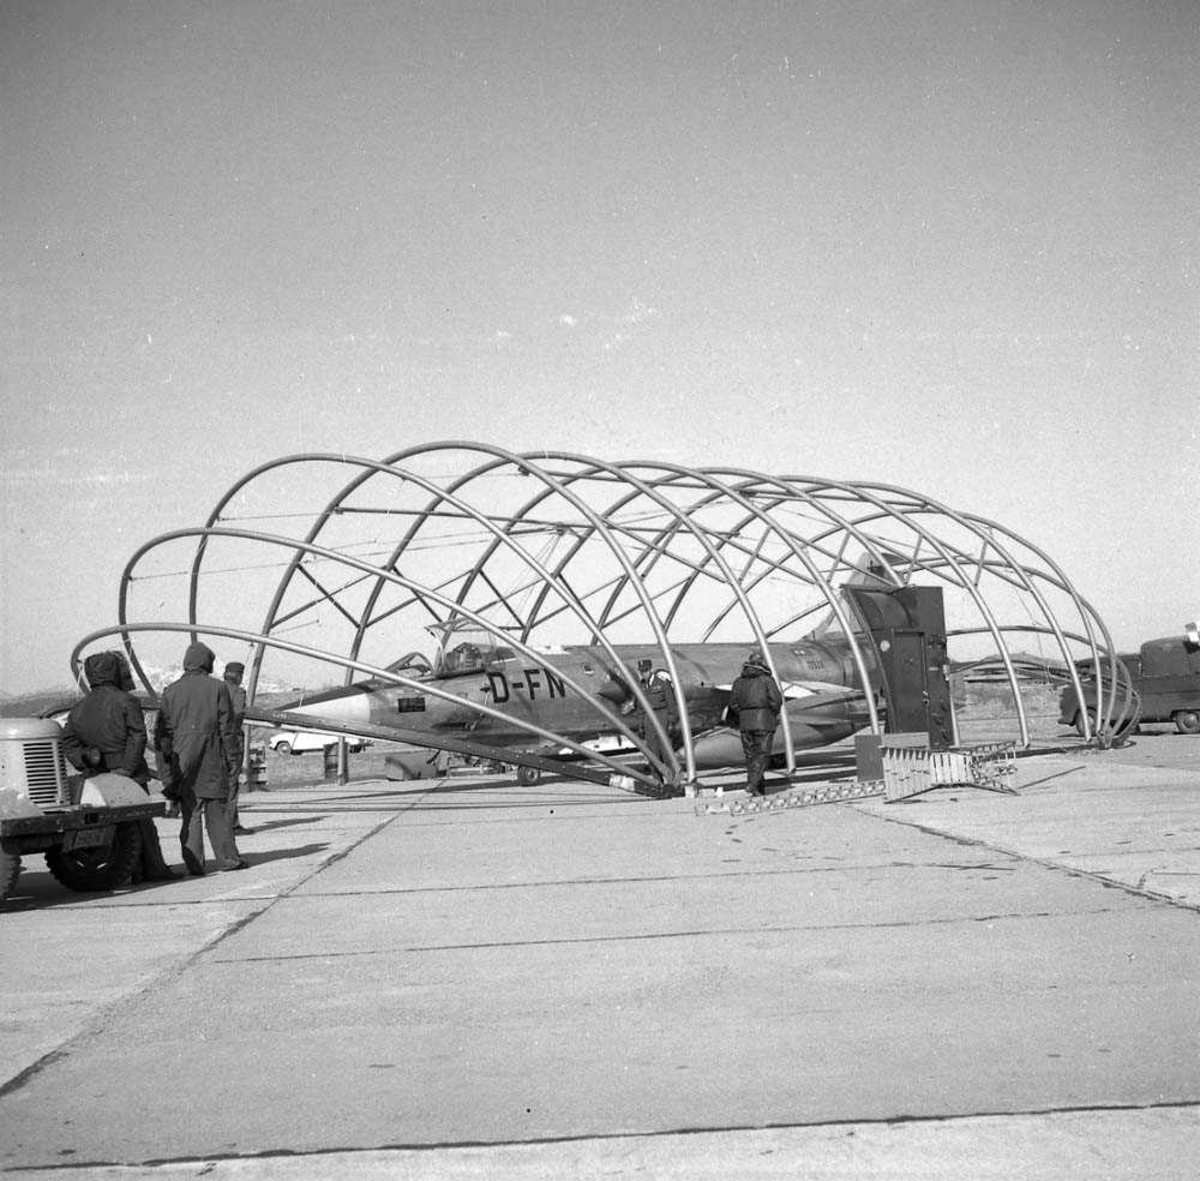 Montering av plasthangar på Bodø flystasjon, beregnet for jagerfly. En F-104-G er parkert inni hangaren.